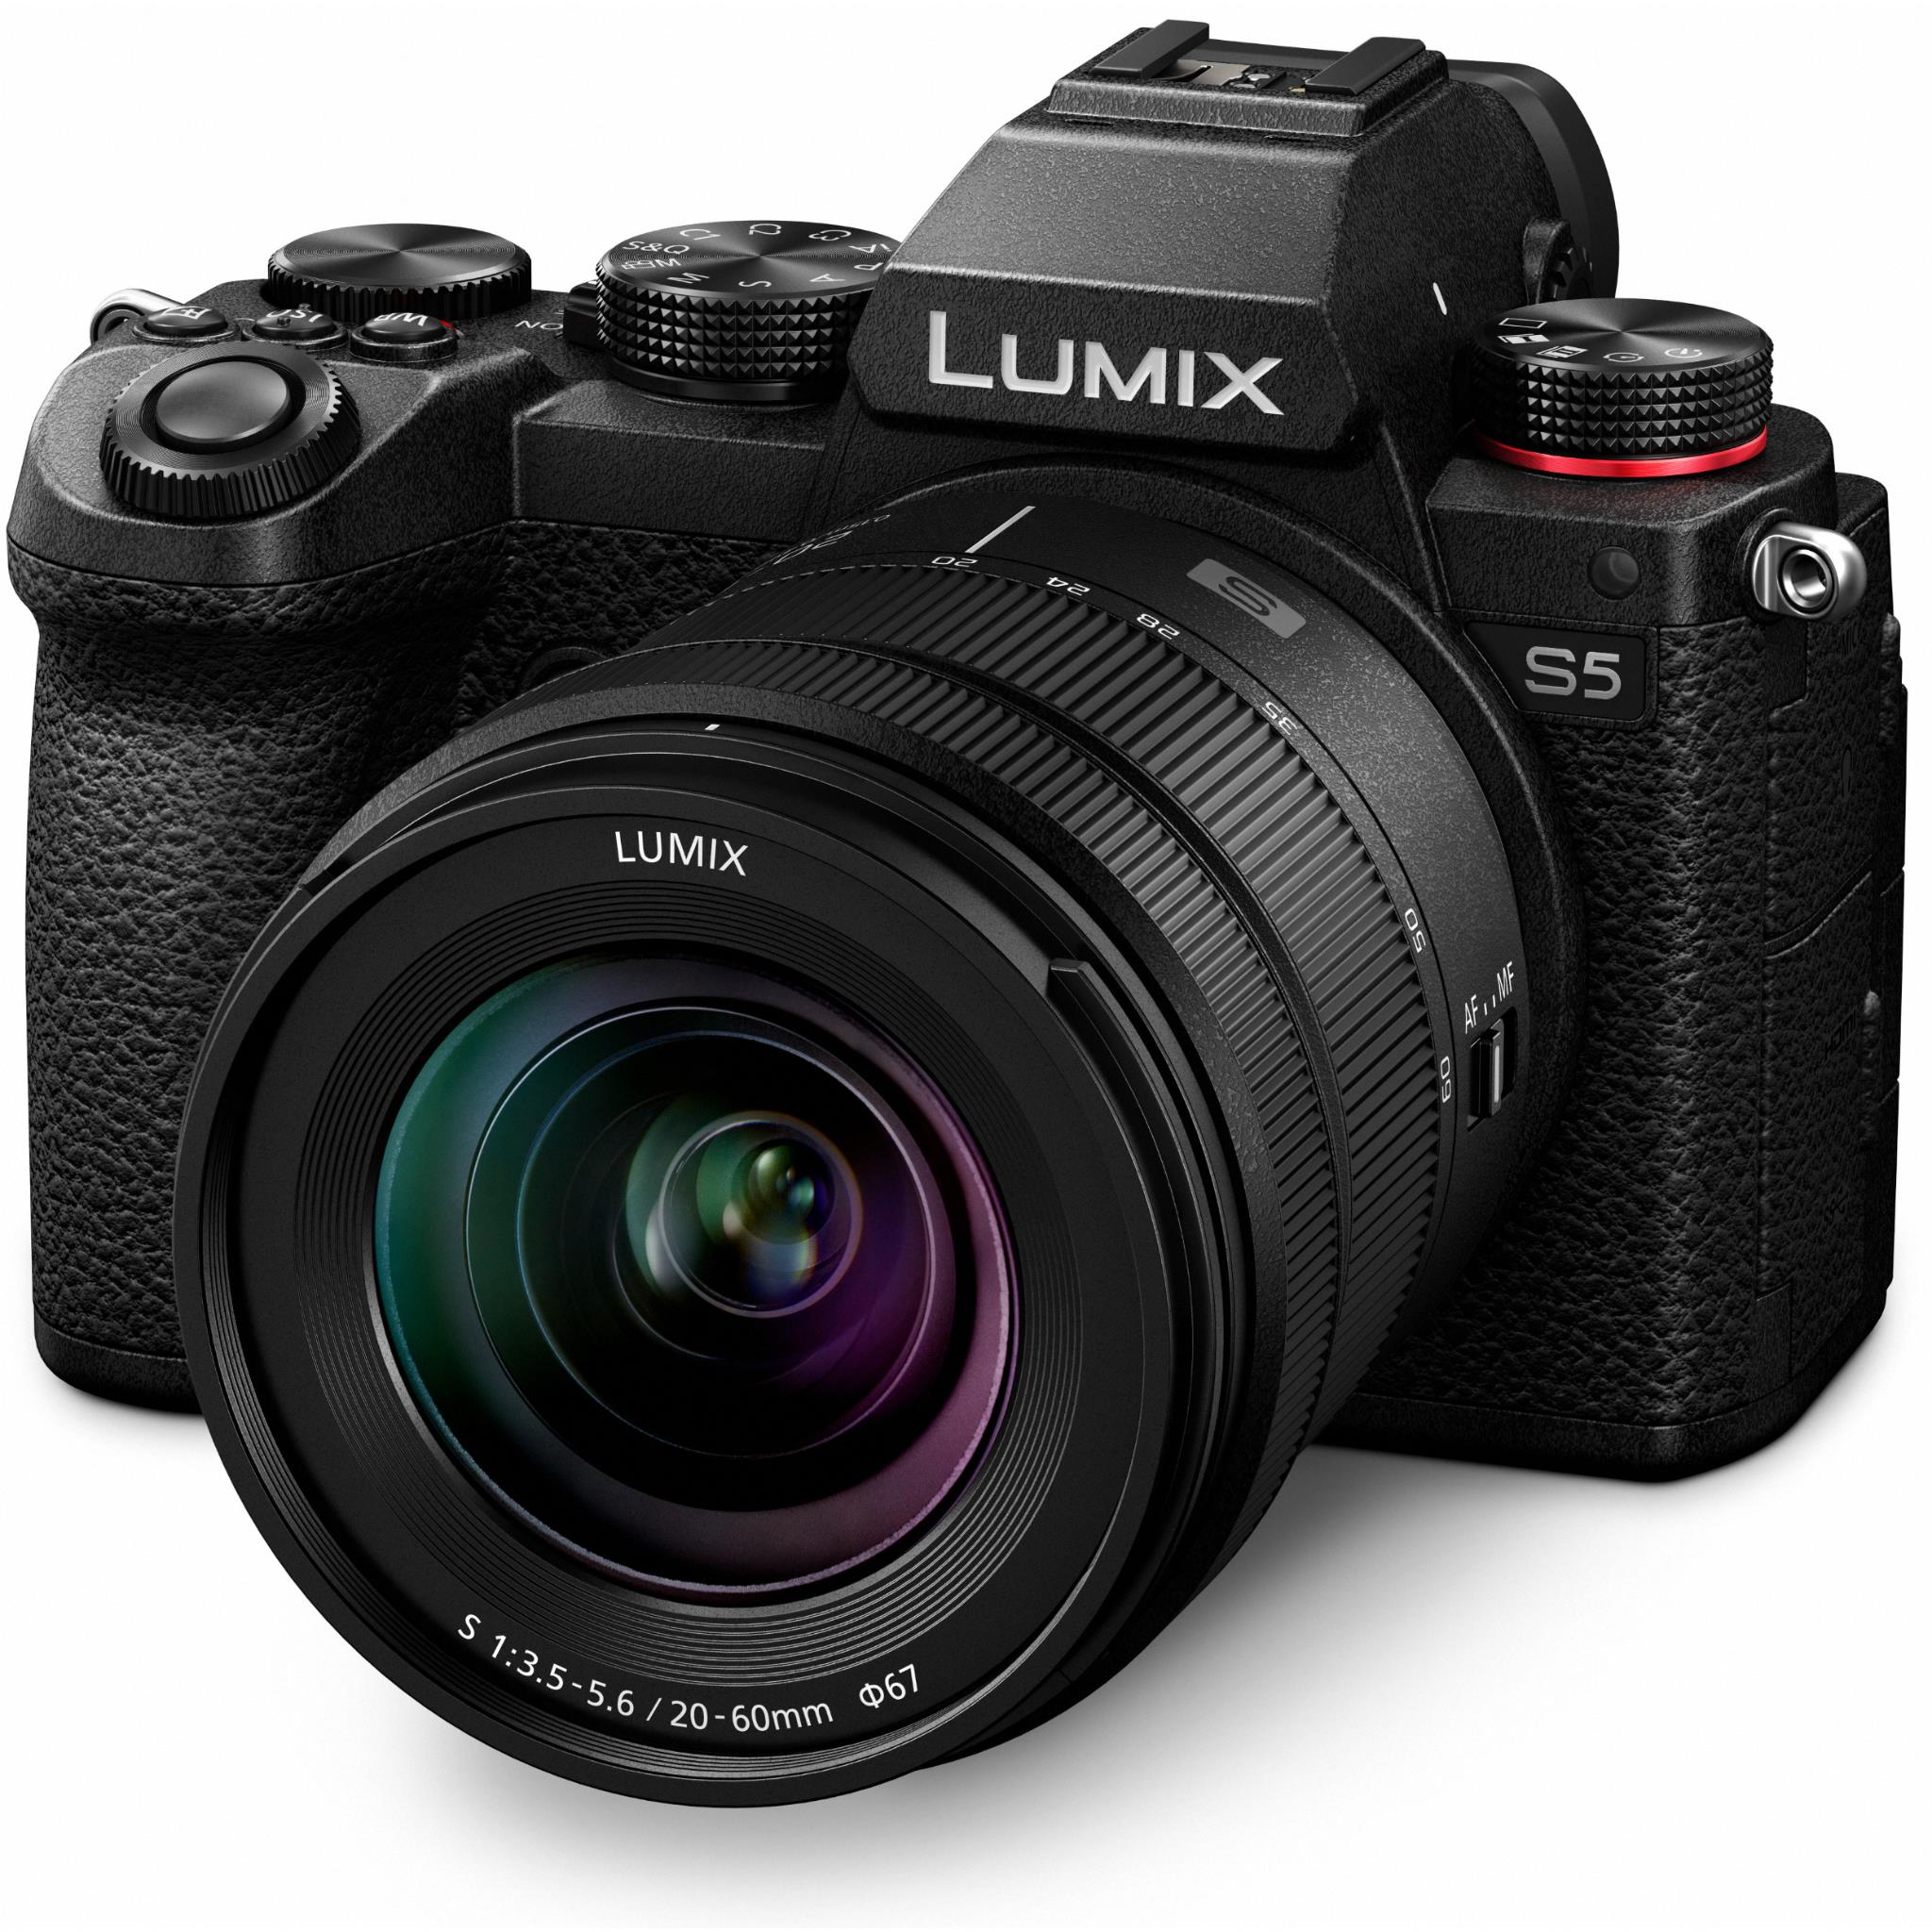 panasonic lumix s5 mirrorless camera with 20-60mm f3.5-5.6 lens